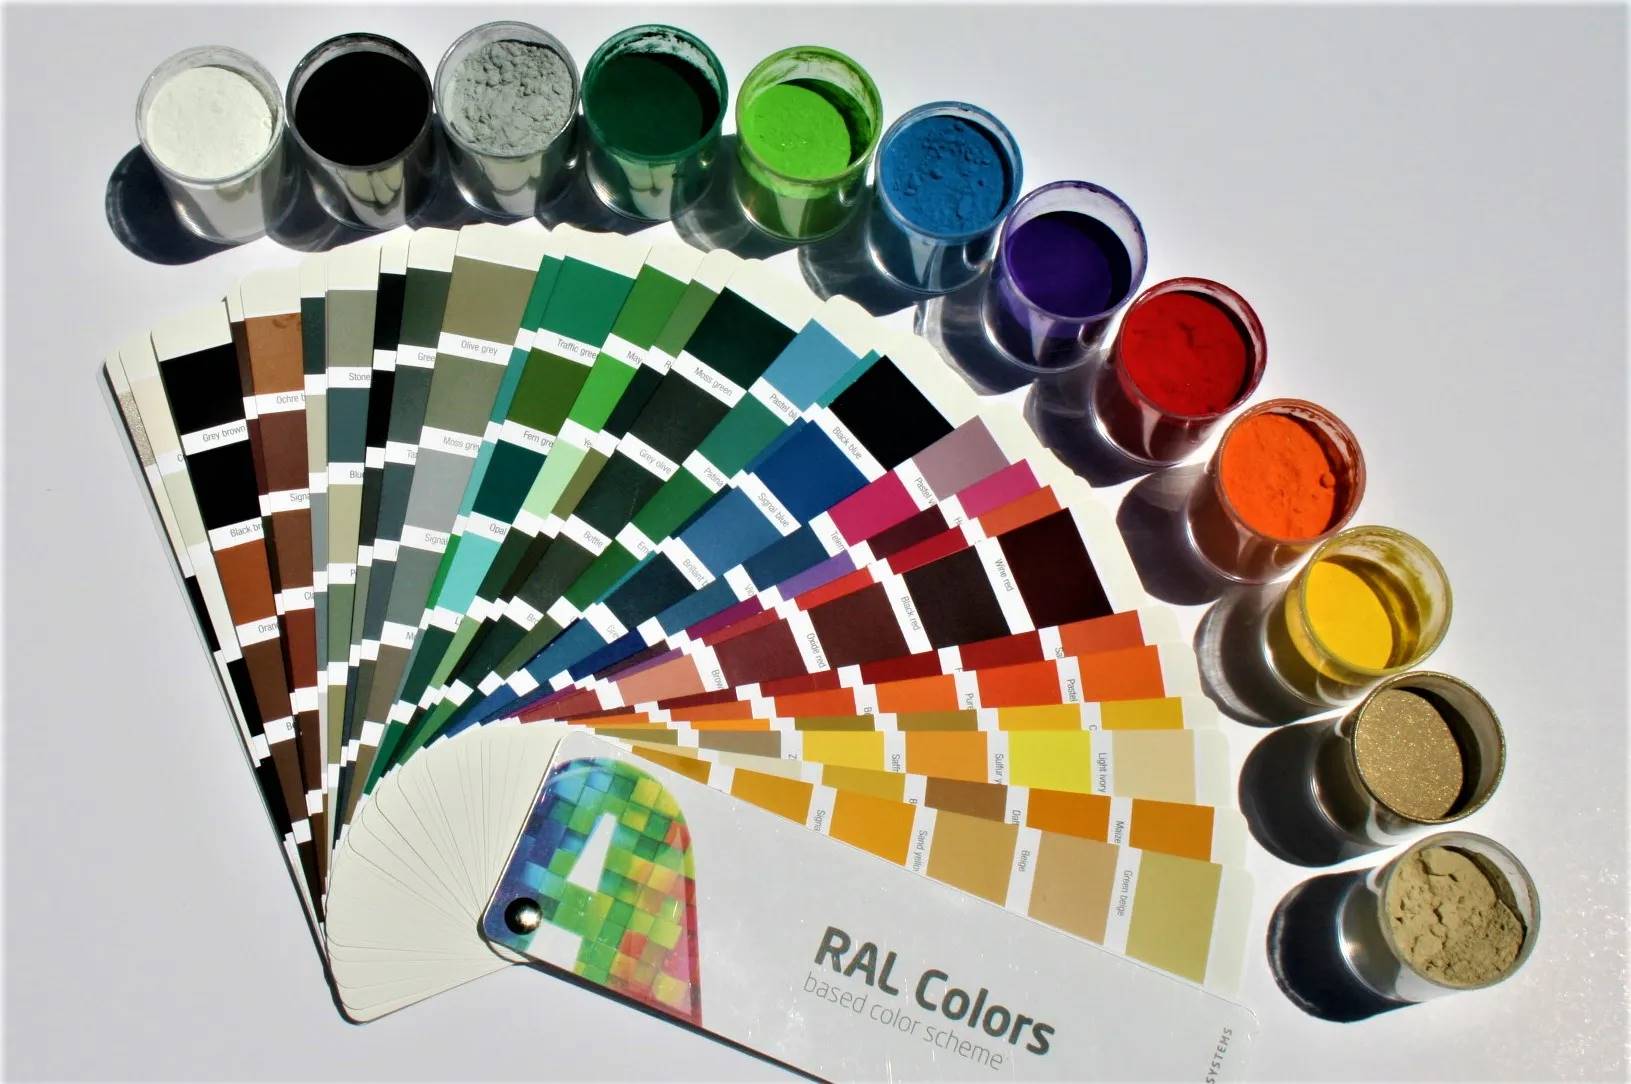 Порошковая краска или акриловая: что выбрать для покраски металла